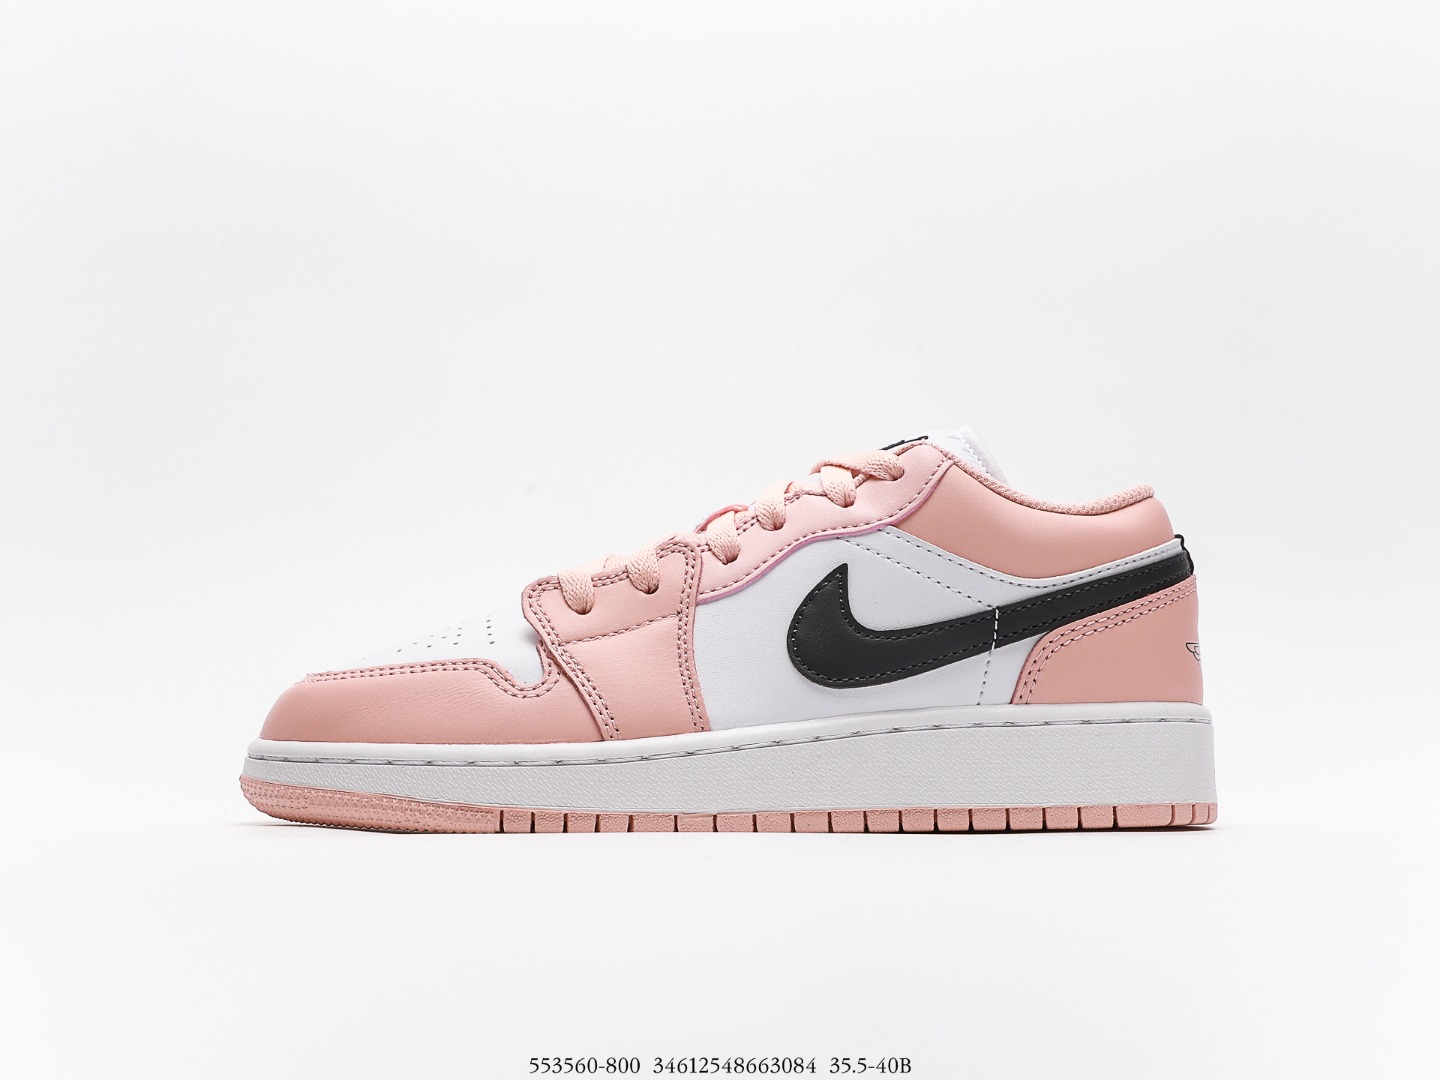 Nike Air Jordan 1 g di colore rosa artico chiaro 553560-800